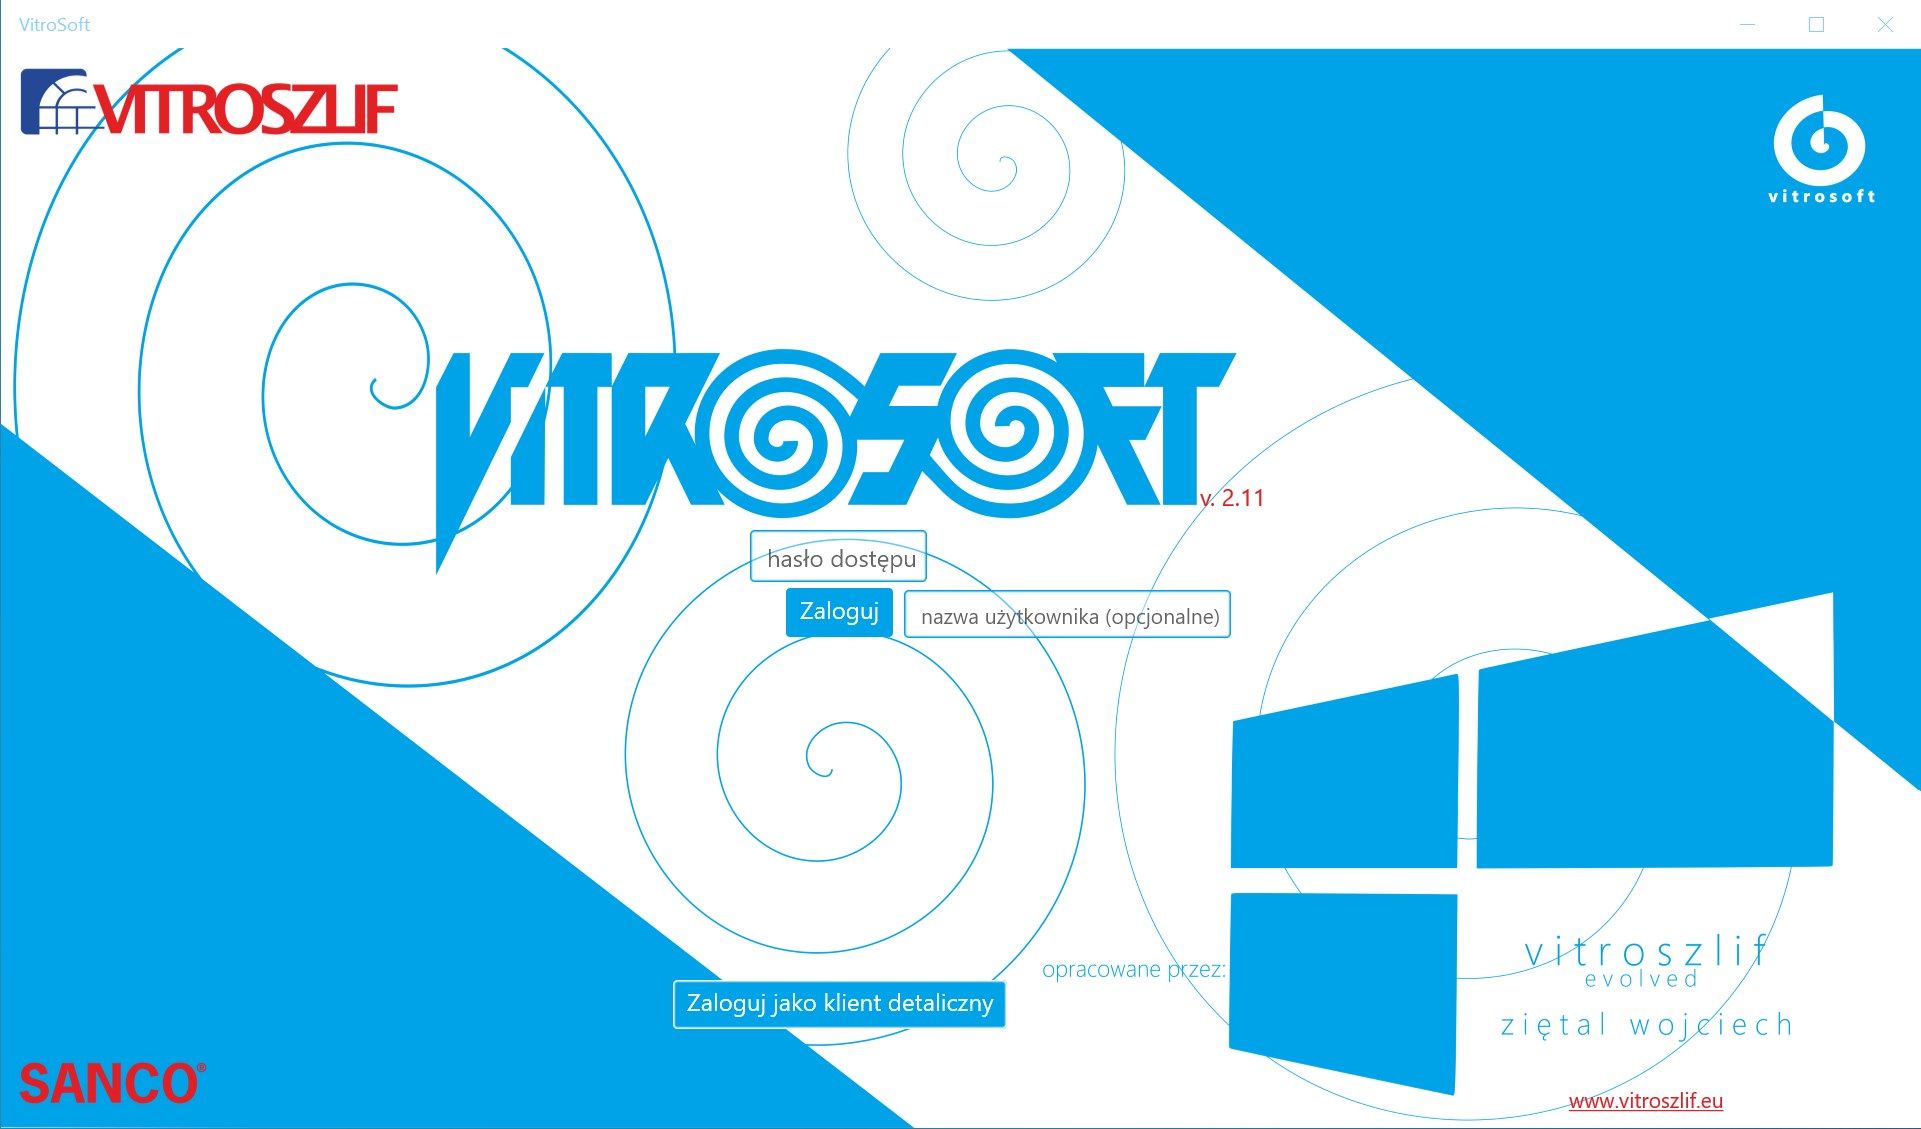 VitroSoft